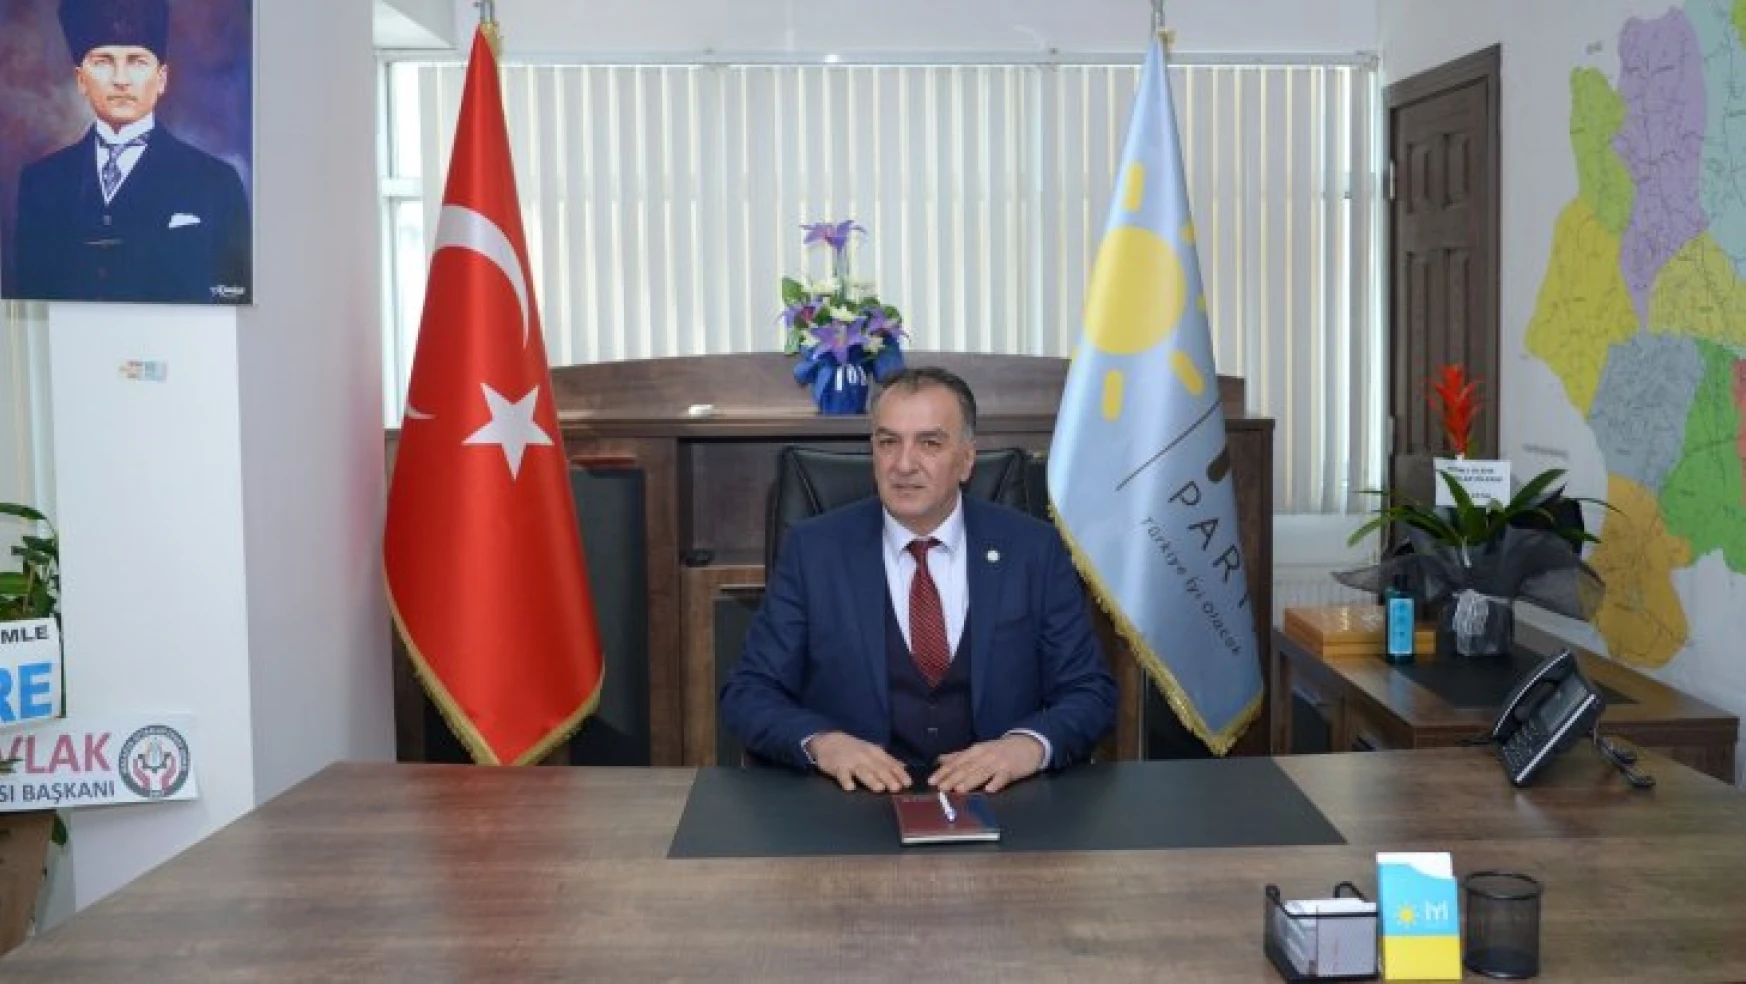 Başkan Hakan Ýılmaz'dan Milletvekili Bülent Tüfenkci'nin Açıklamasına Tepki